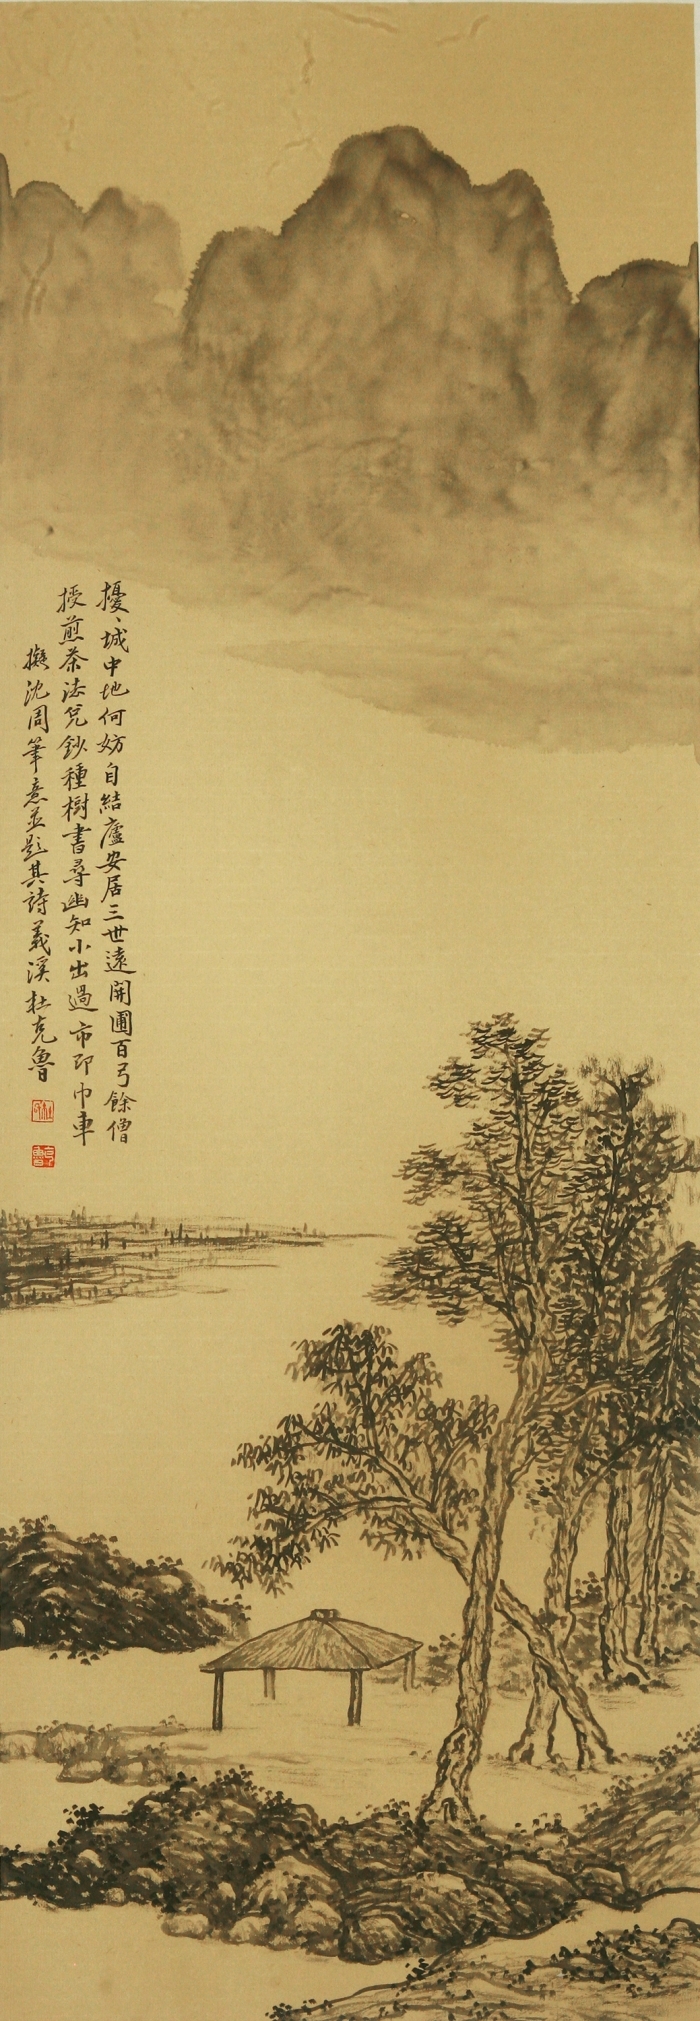 La galerie Fenghetang Art Chinois - L'utilisation actuelle de l'ancienneté 9